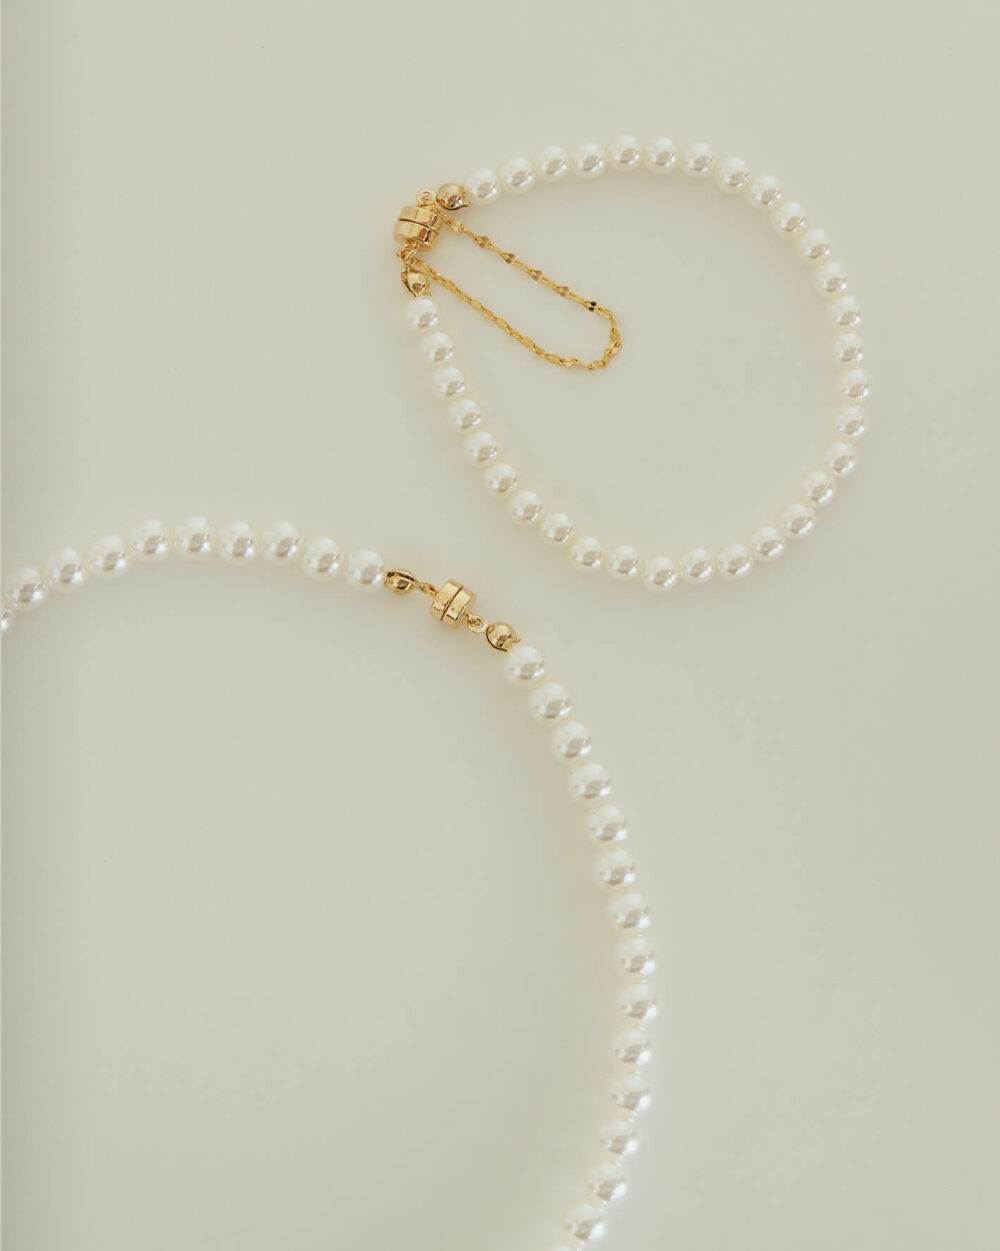 Eco安珂,韓國飾品,韓國項鏈,韓國項鍊,鎖骨項鏈,鎖骨項鍊,珍珠項鍊,珍珠項鏈,淡水珍珠項鍊,磁鐵項鍊,磁吸式項鍊